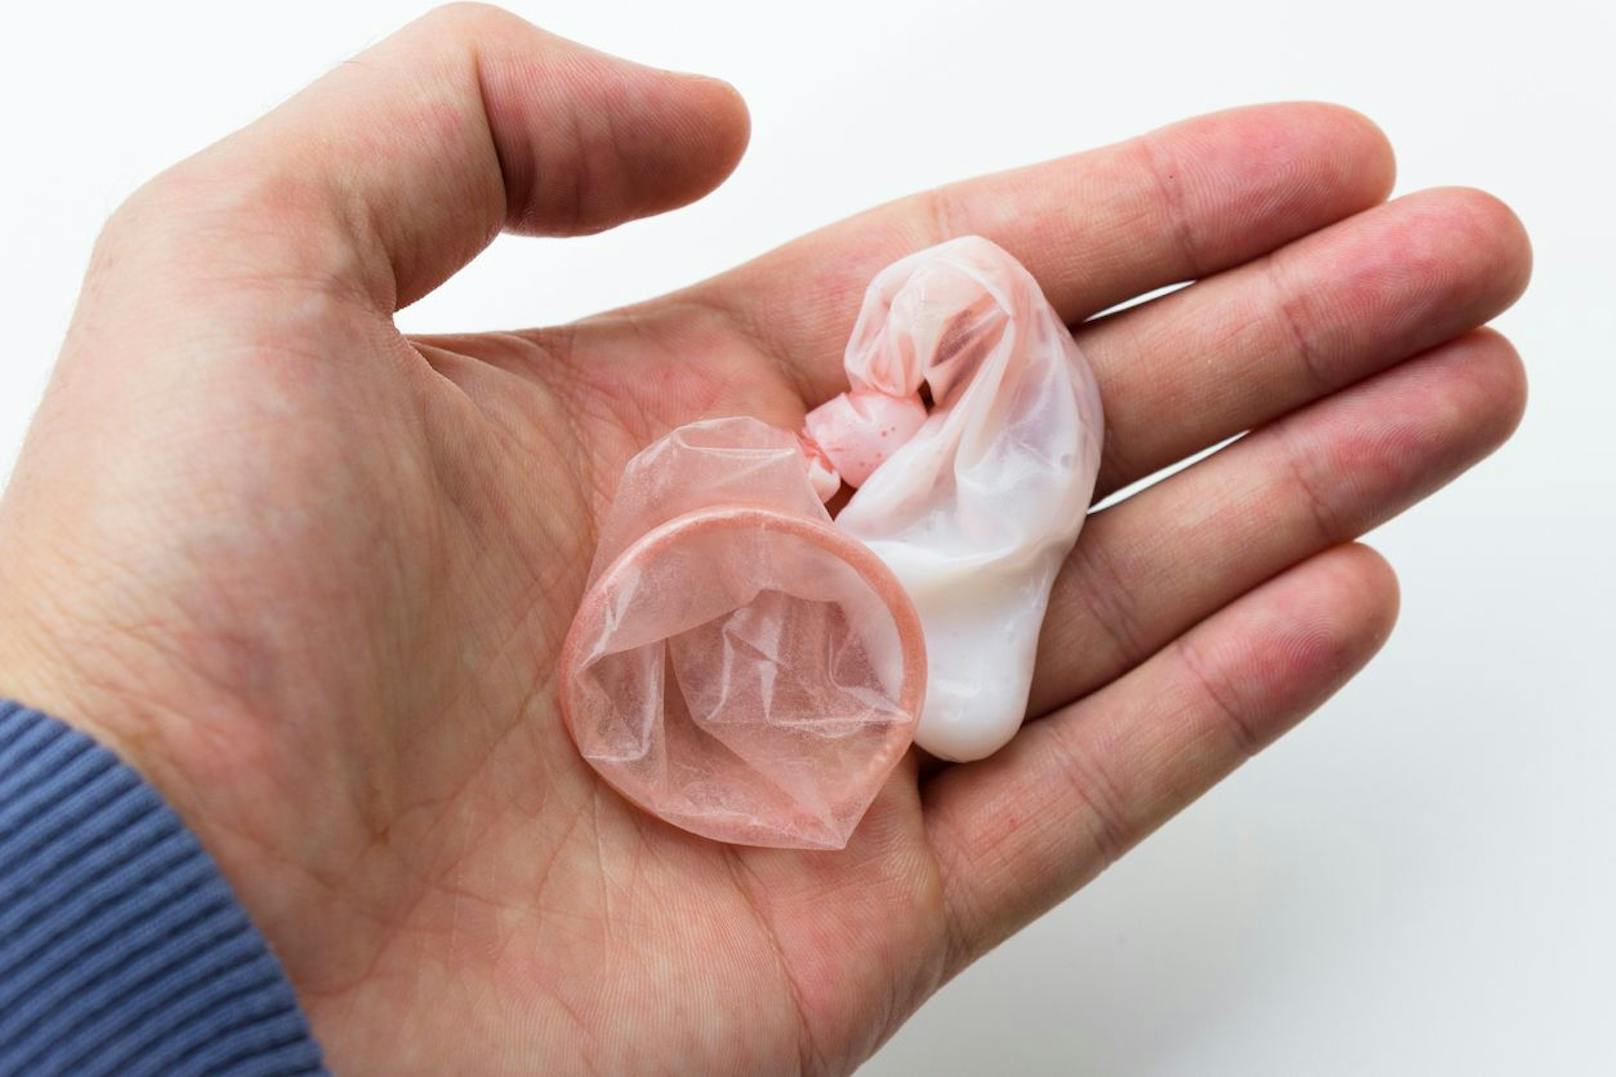 Wenn du davon ausgegangen bist, dass Spermien auch außerhalb des Körpers überleben können, dann liegst du leider falsch. Sobald die Samenflüssigkeit nach außen gelangt und auf Bettlaken, im Kondom oder ähnlichem trocknet, heißt es "Aus" mit den fruchtbaren Samenzellen.